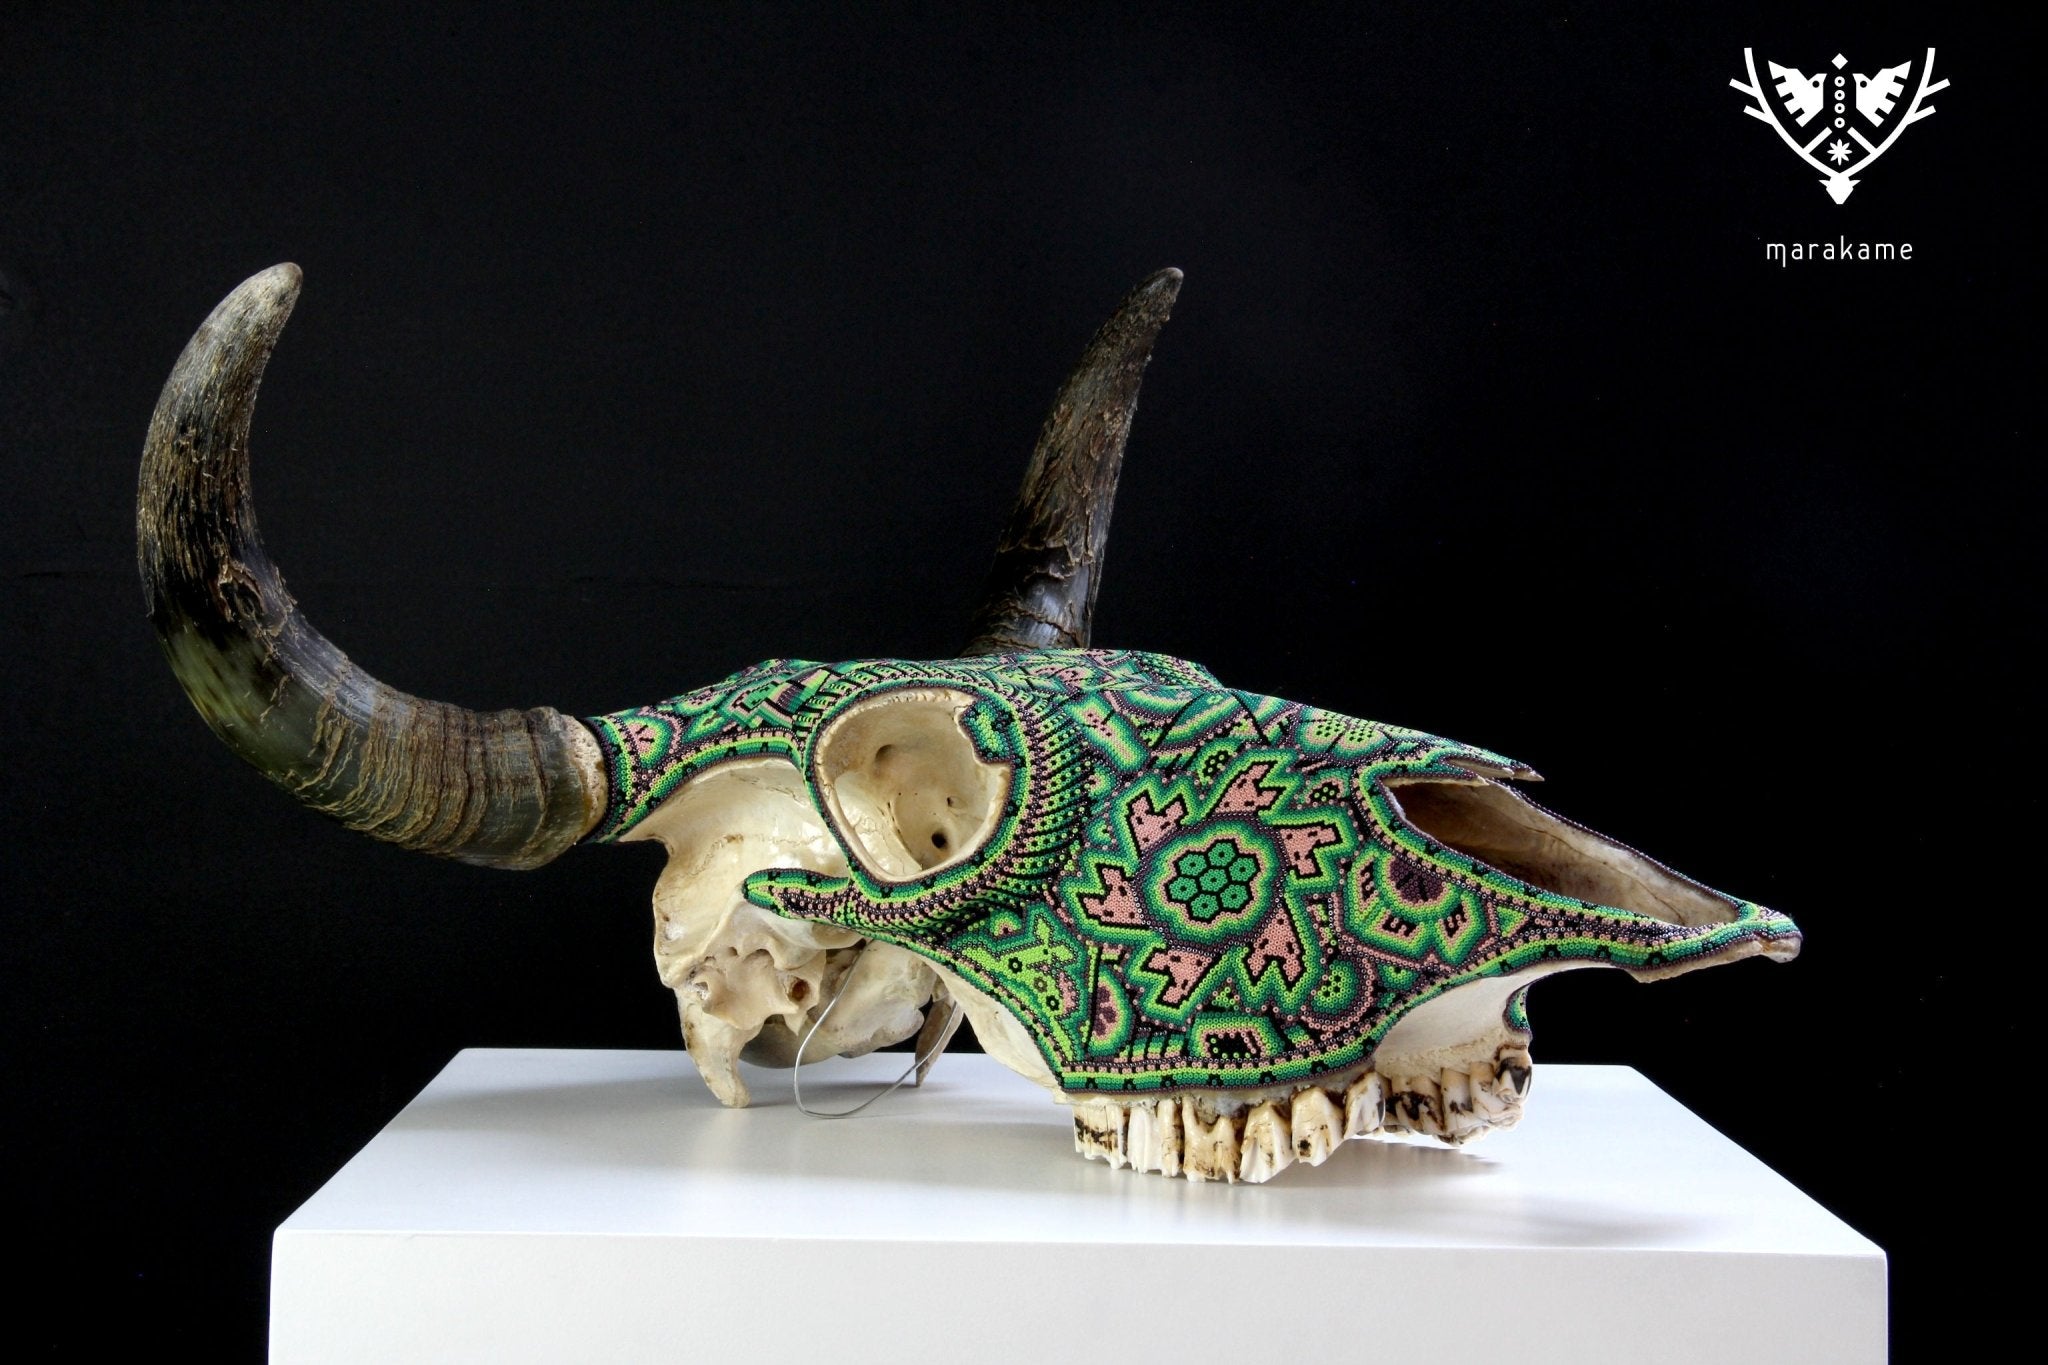 牛の頭蓋骨 ウイチョル族の芸術 - xurawe tuutú - ウイチョル族の芸術 - マラカメ